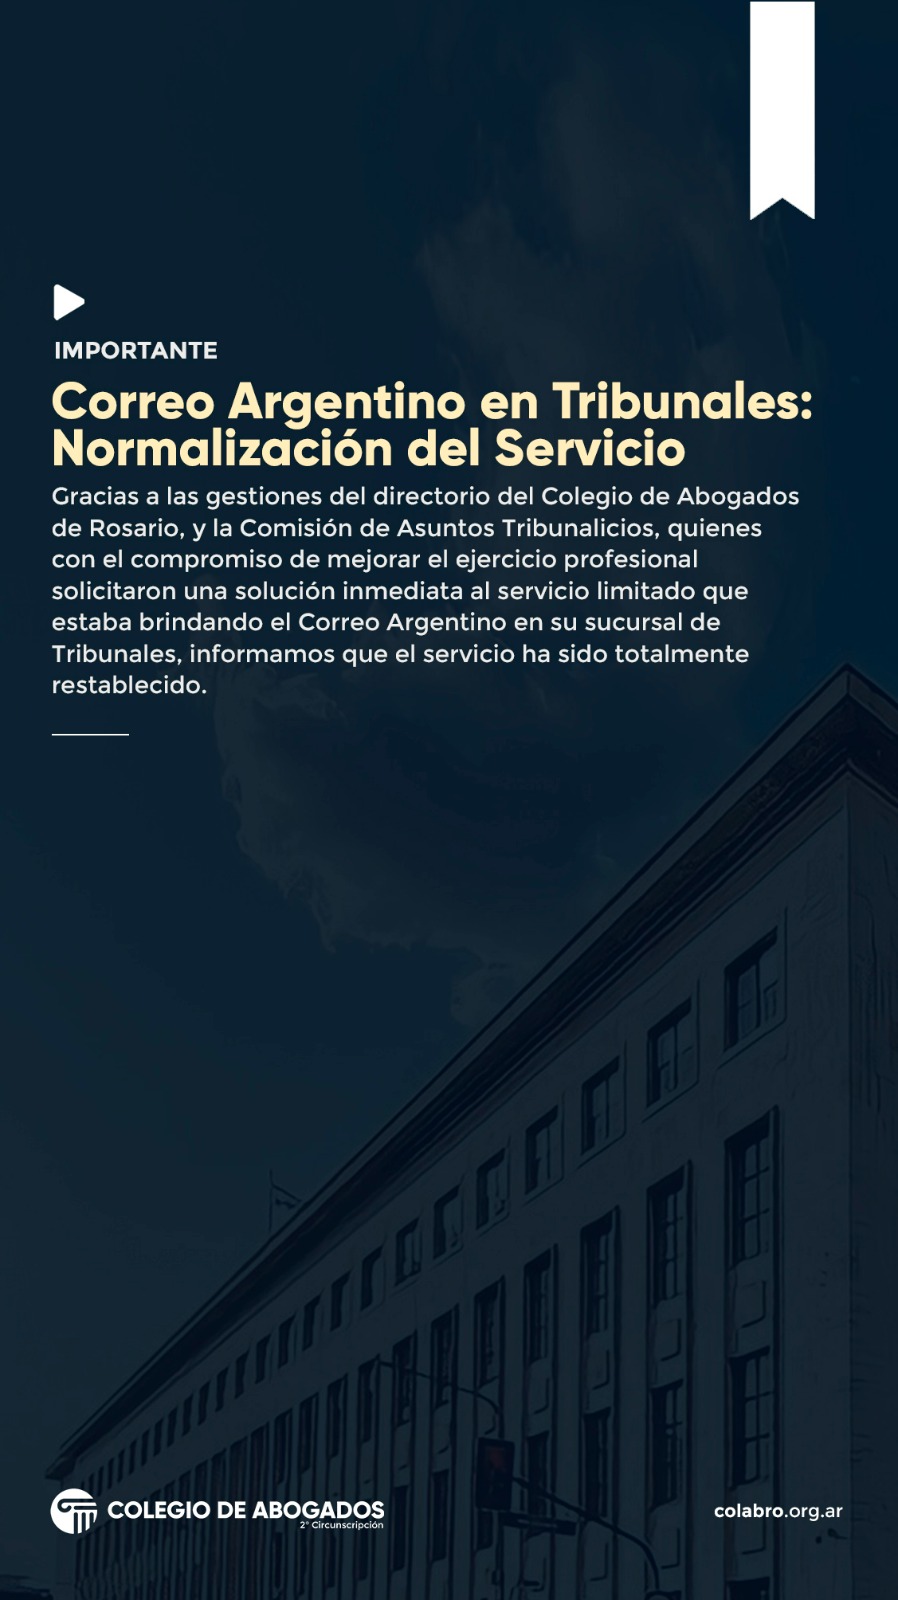 Correo Argentino en Tribunales: Normalización del Servicio